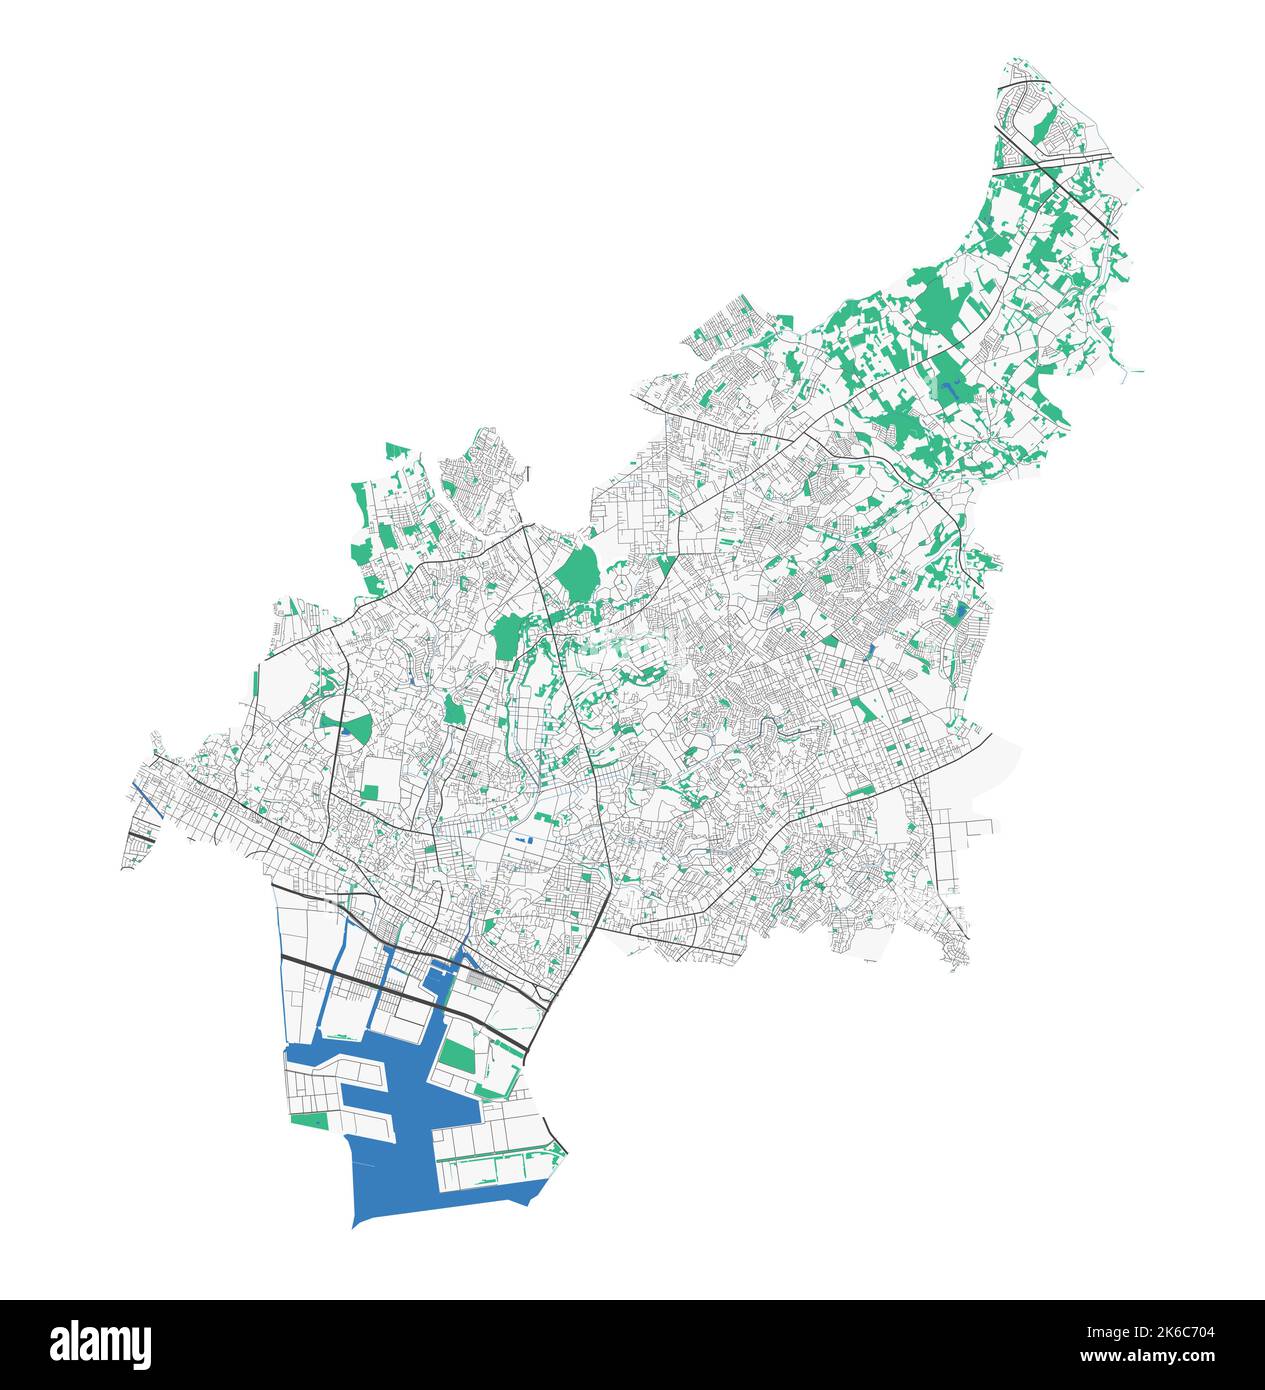 Mappa di Funabashi. Mappa dettagliata dell'area amministrativa della città di Funabashi. Panorama urbano. Illustrazione vettoriale senza royalty. Mappa stradale con autostrade, fiume Illustrazione Vettoriale